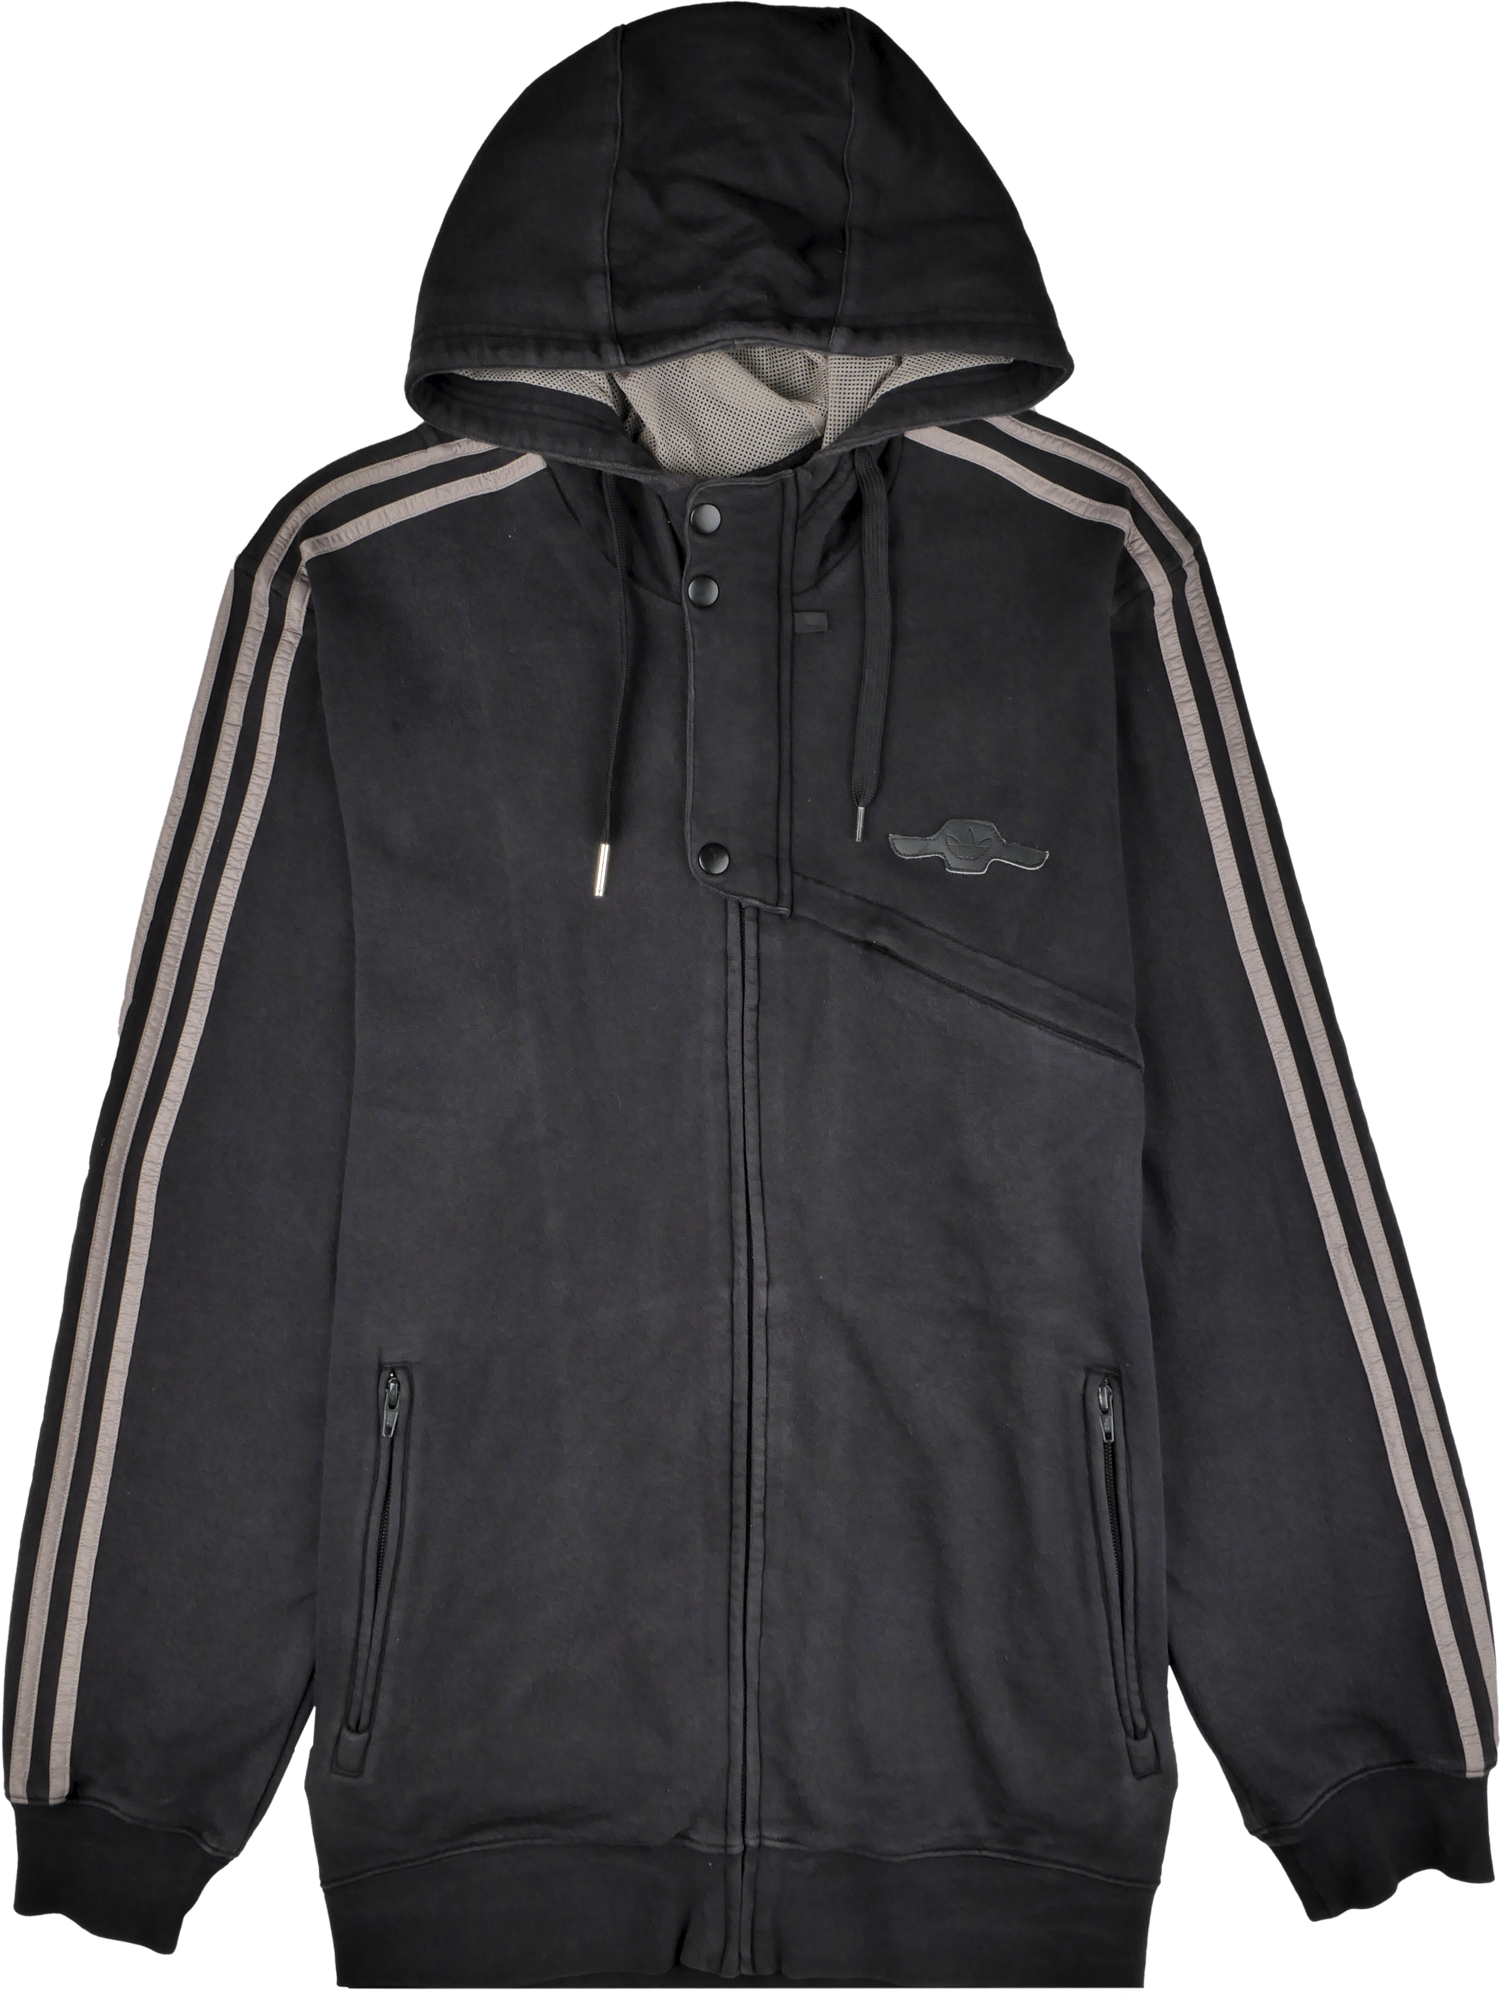 Adidas Zip Pullover schwarz